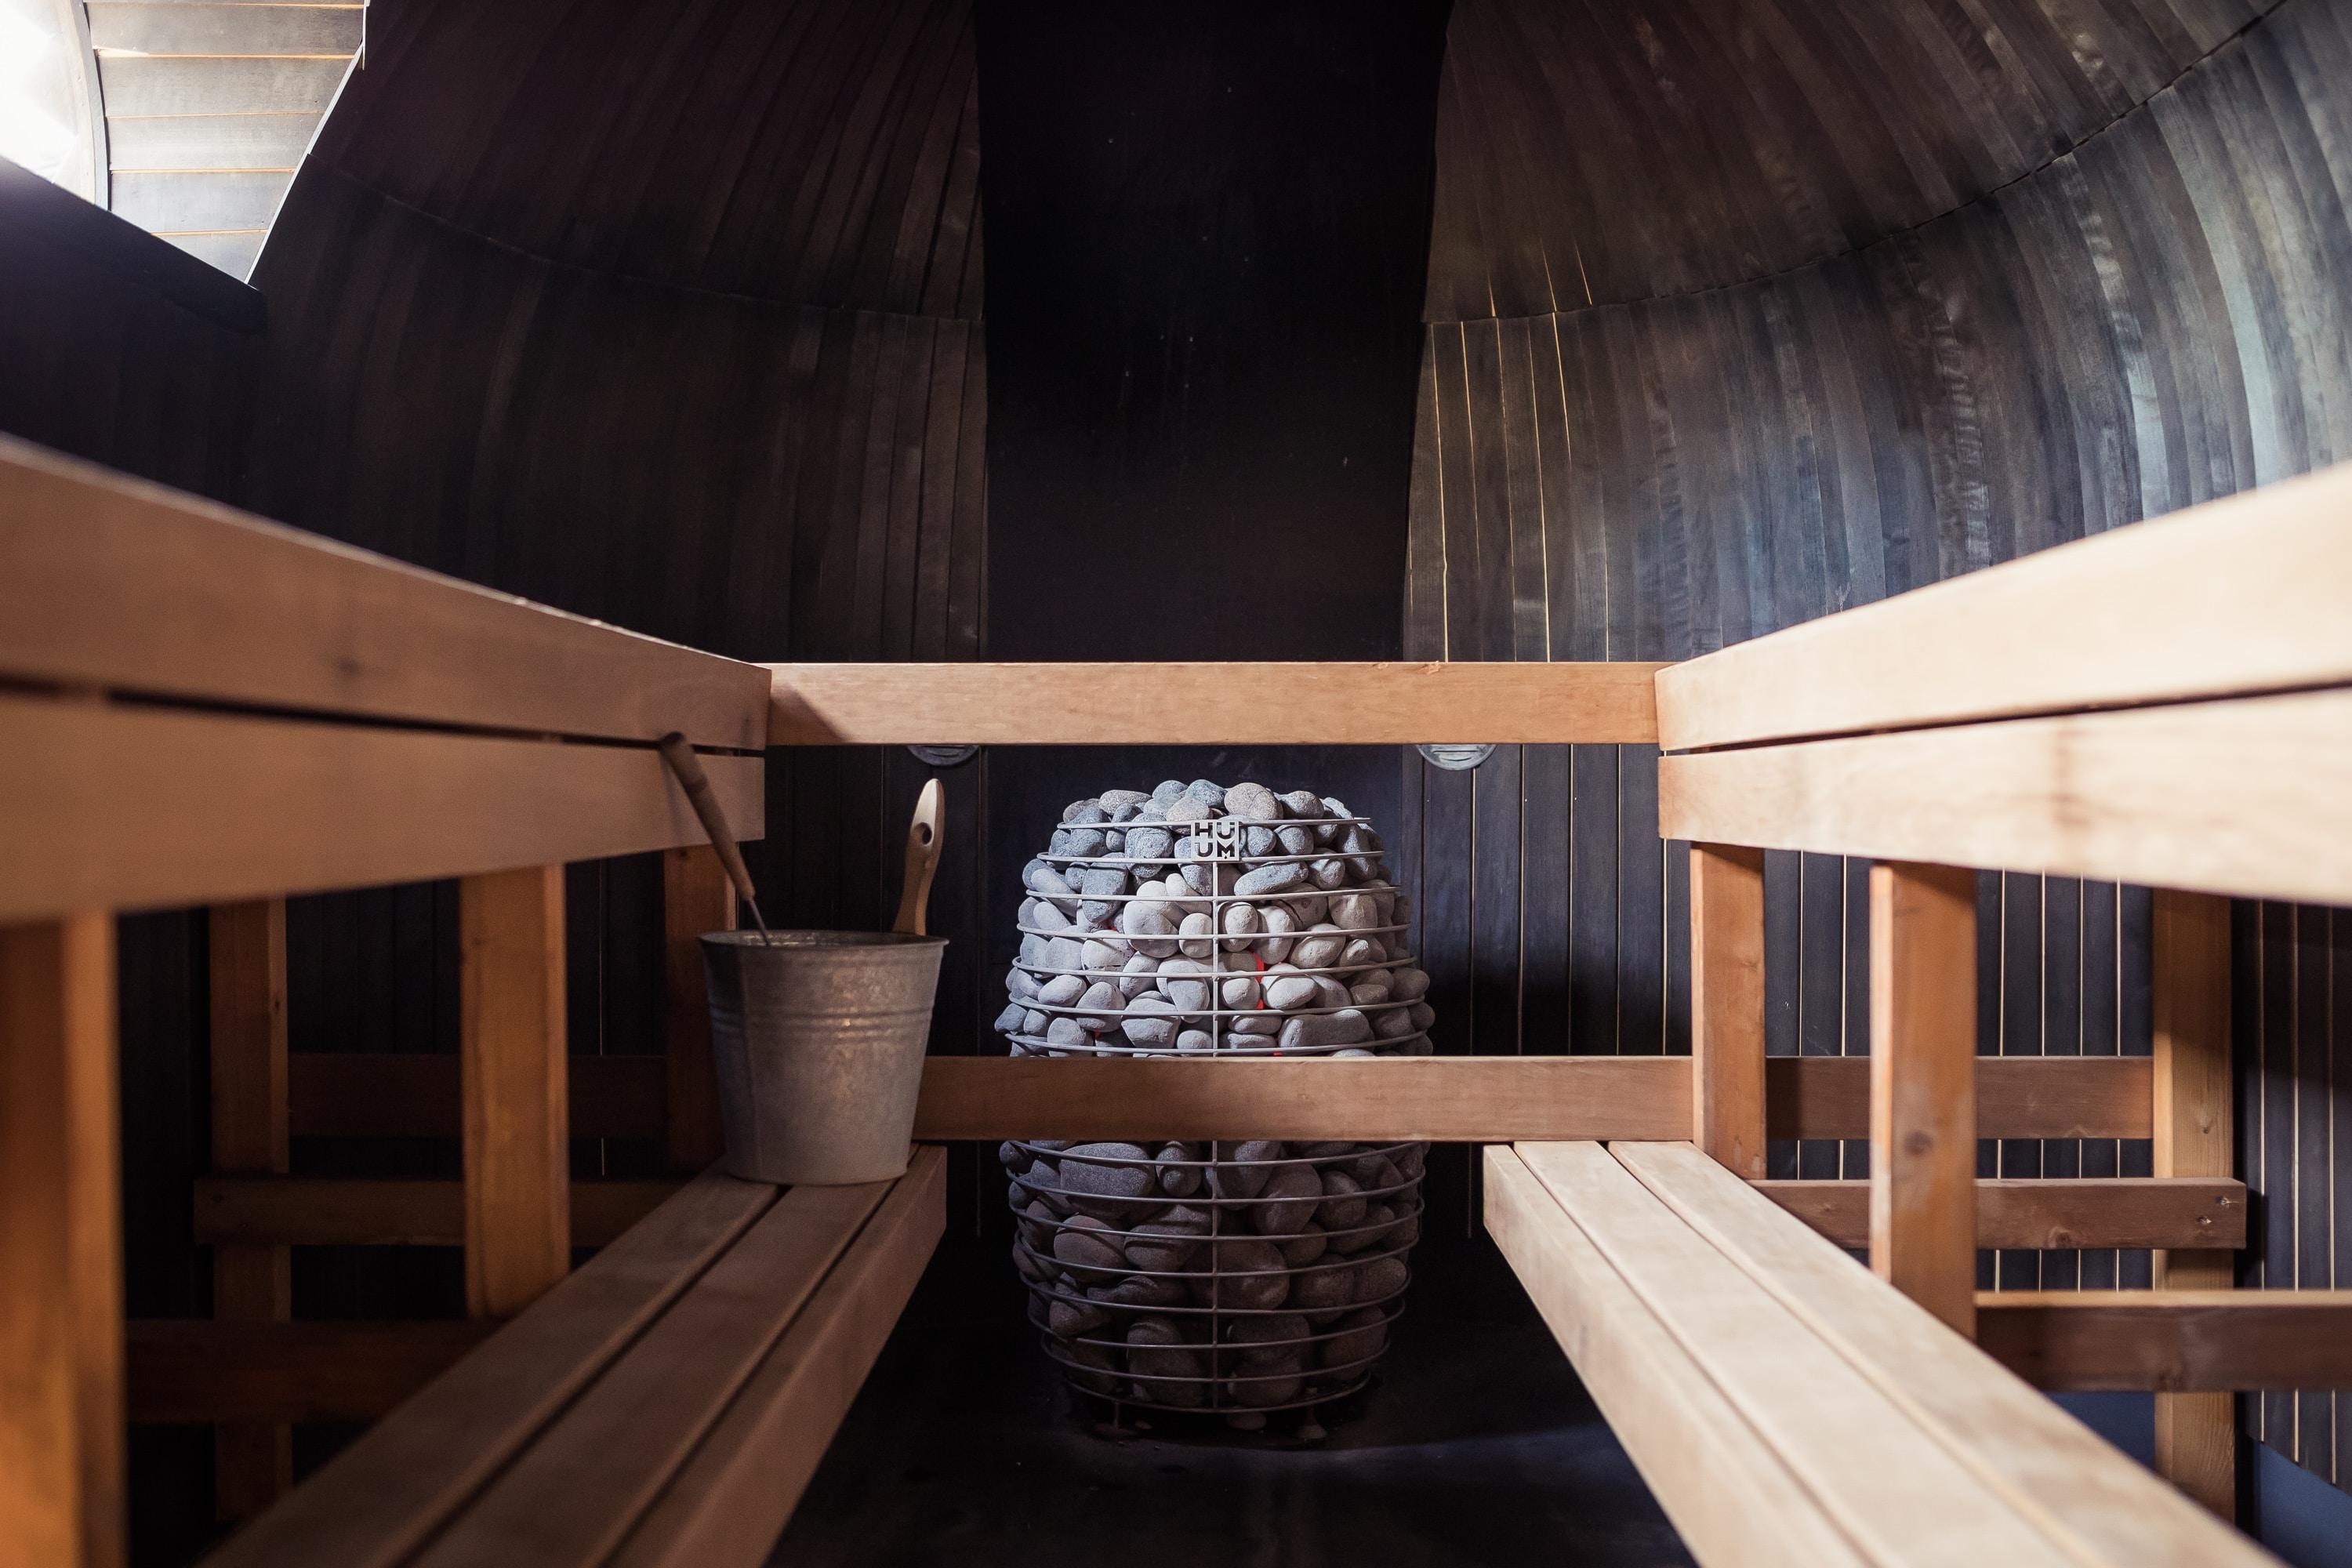 Co daje sauna? Jakie są korzyści saunowania? 5 powodów dla których warto korzystać z sauny. Relaks – relaks i odprężenie to największe zalety korzystania z sauny. Sauna – właściwości i przeciwwskazania 